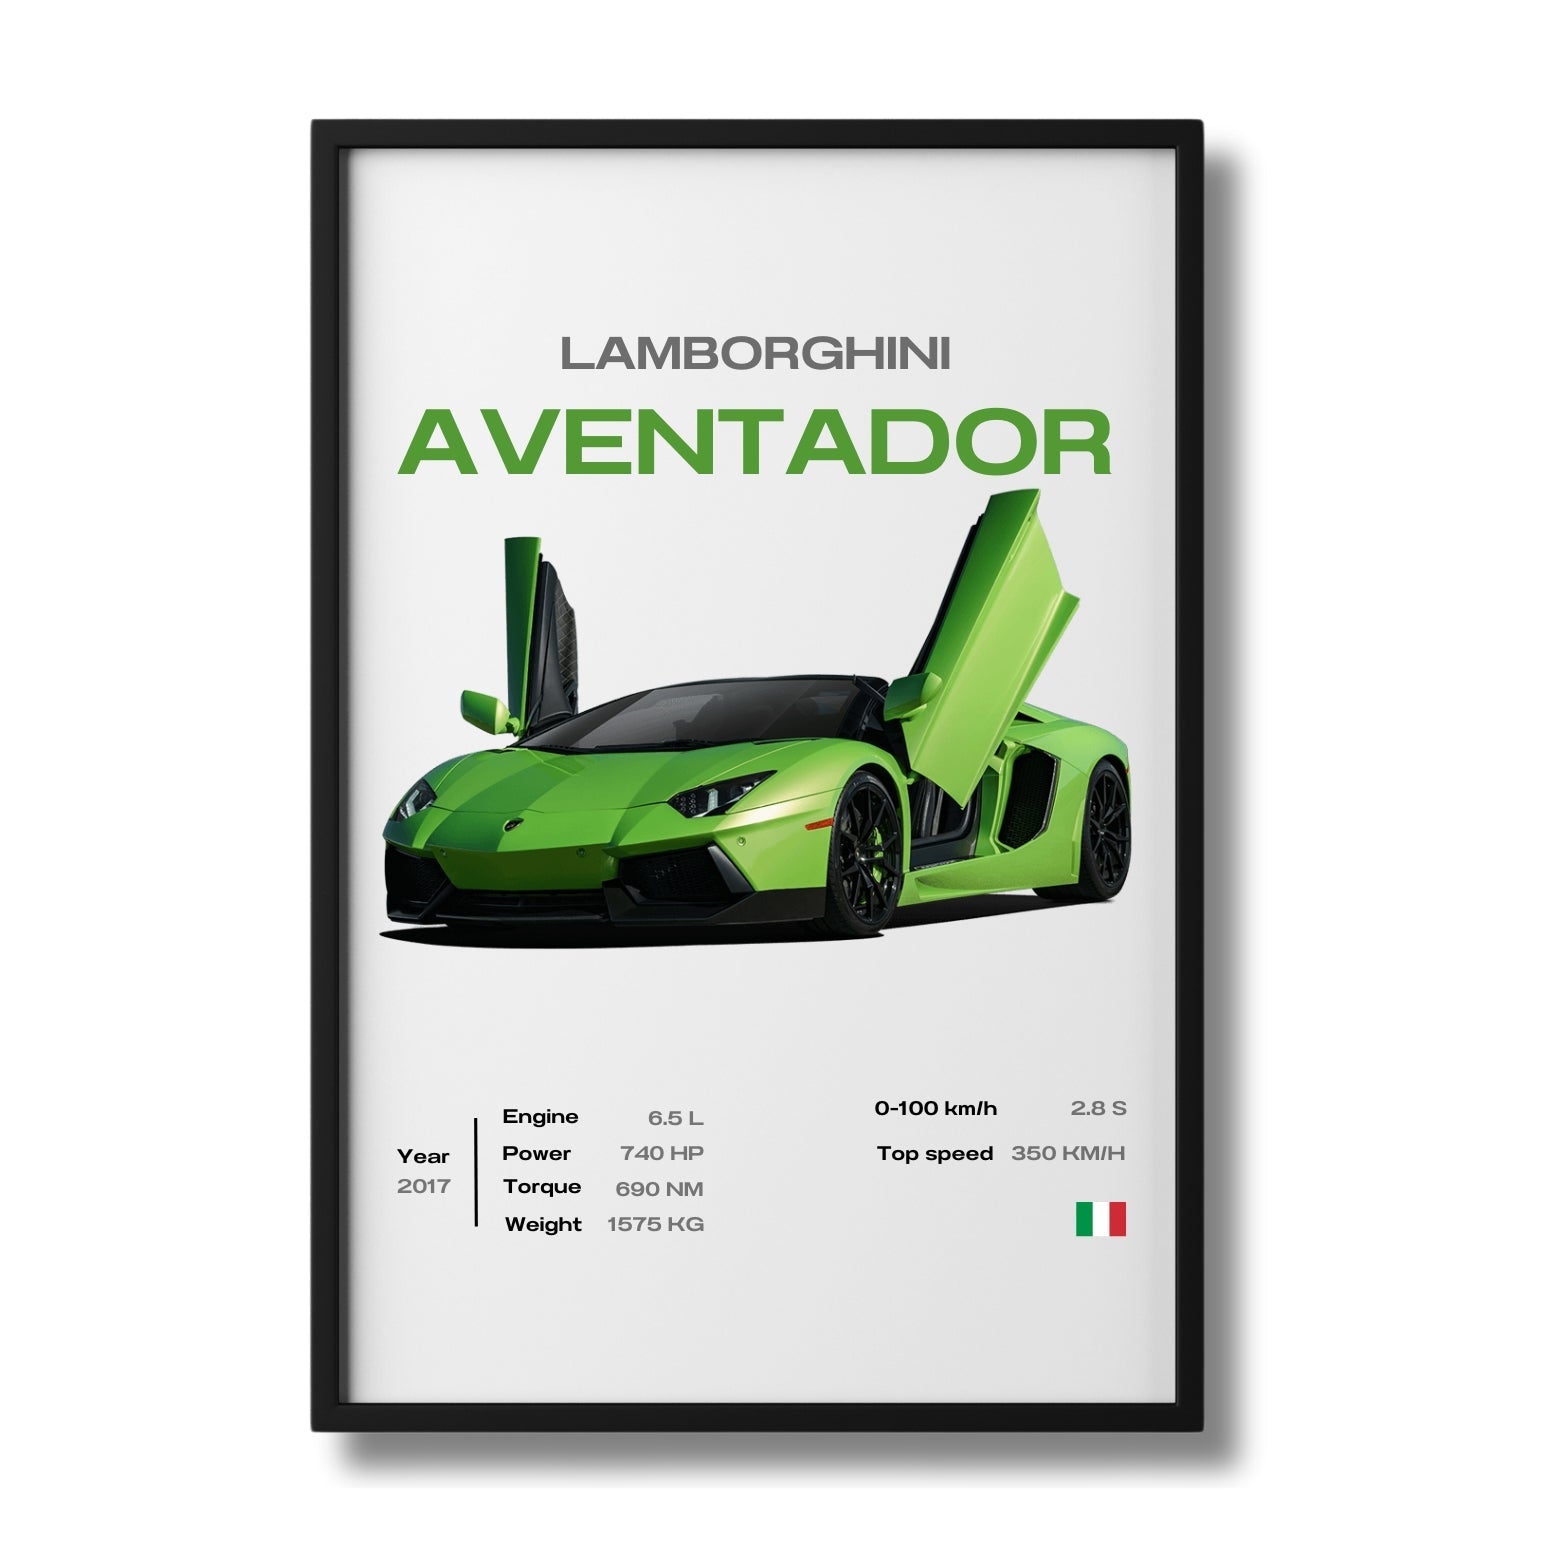 Lamborghini - Digital File Pack X10